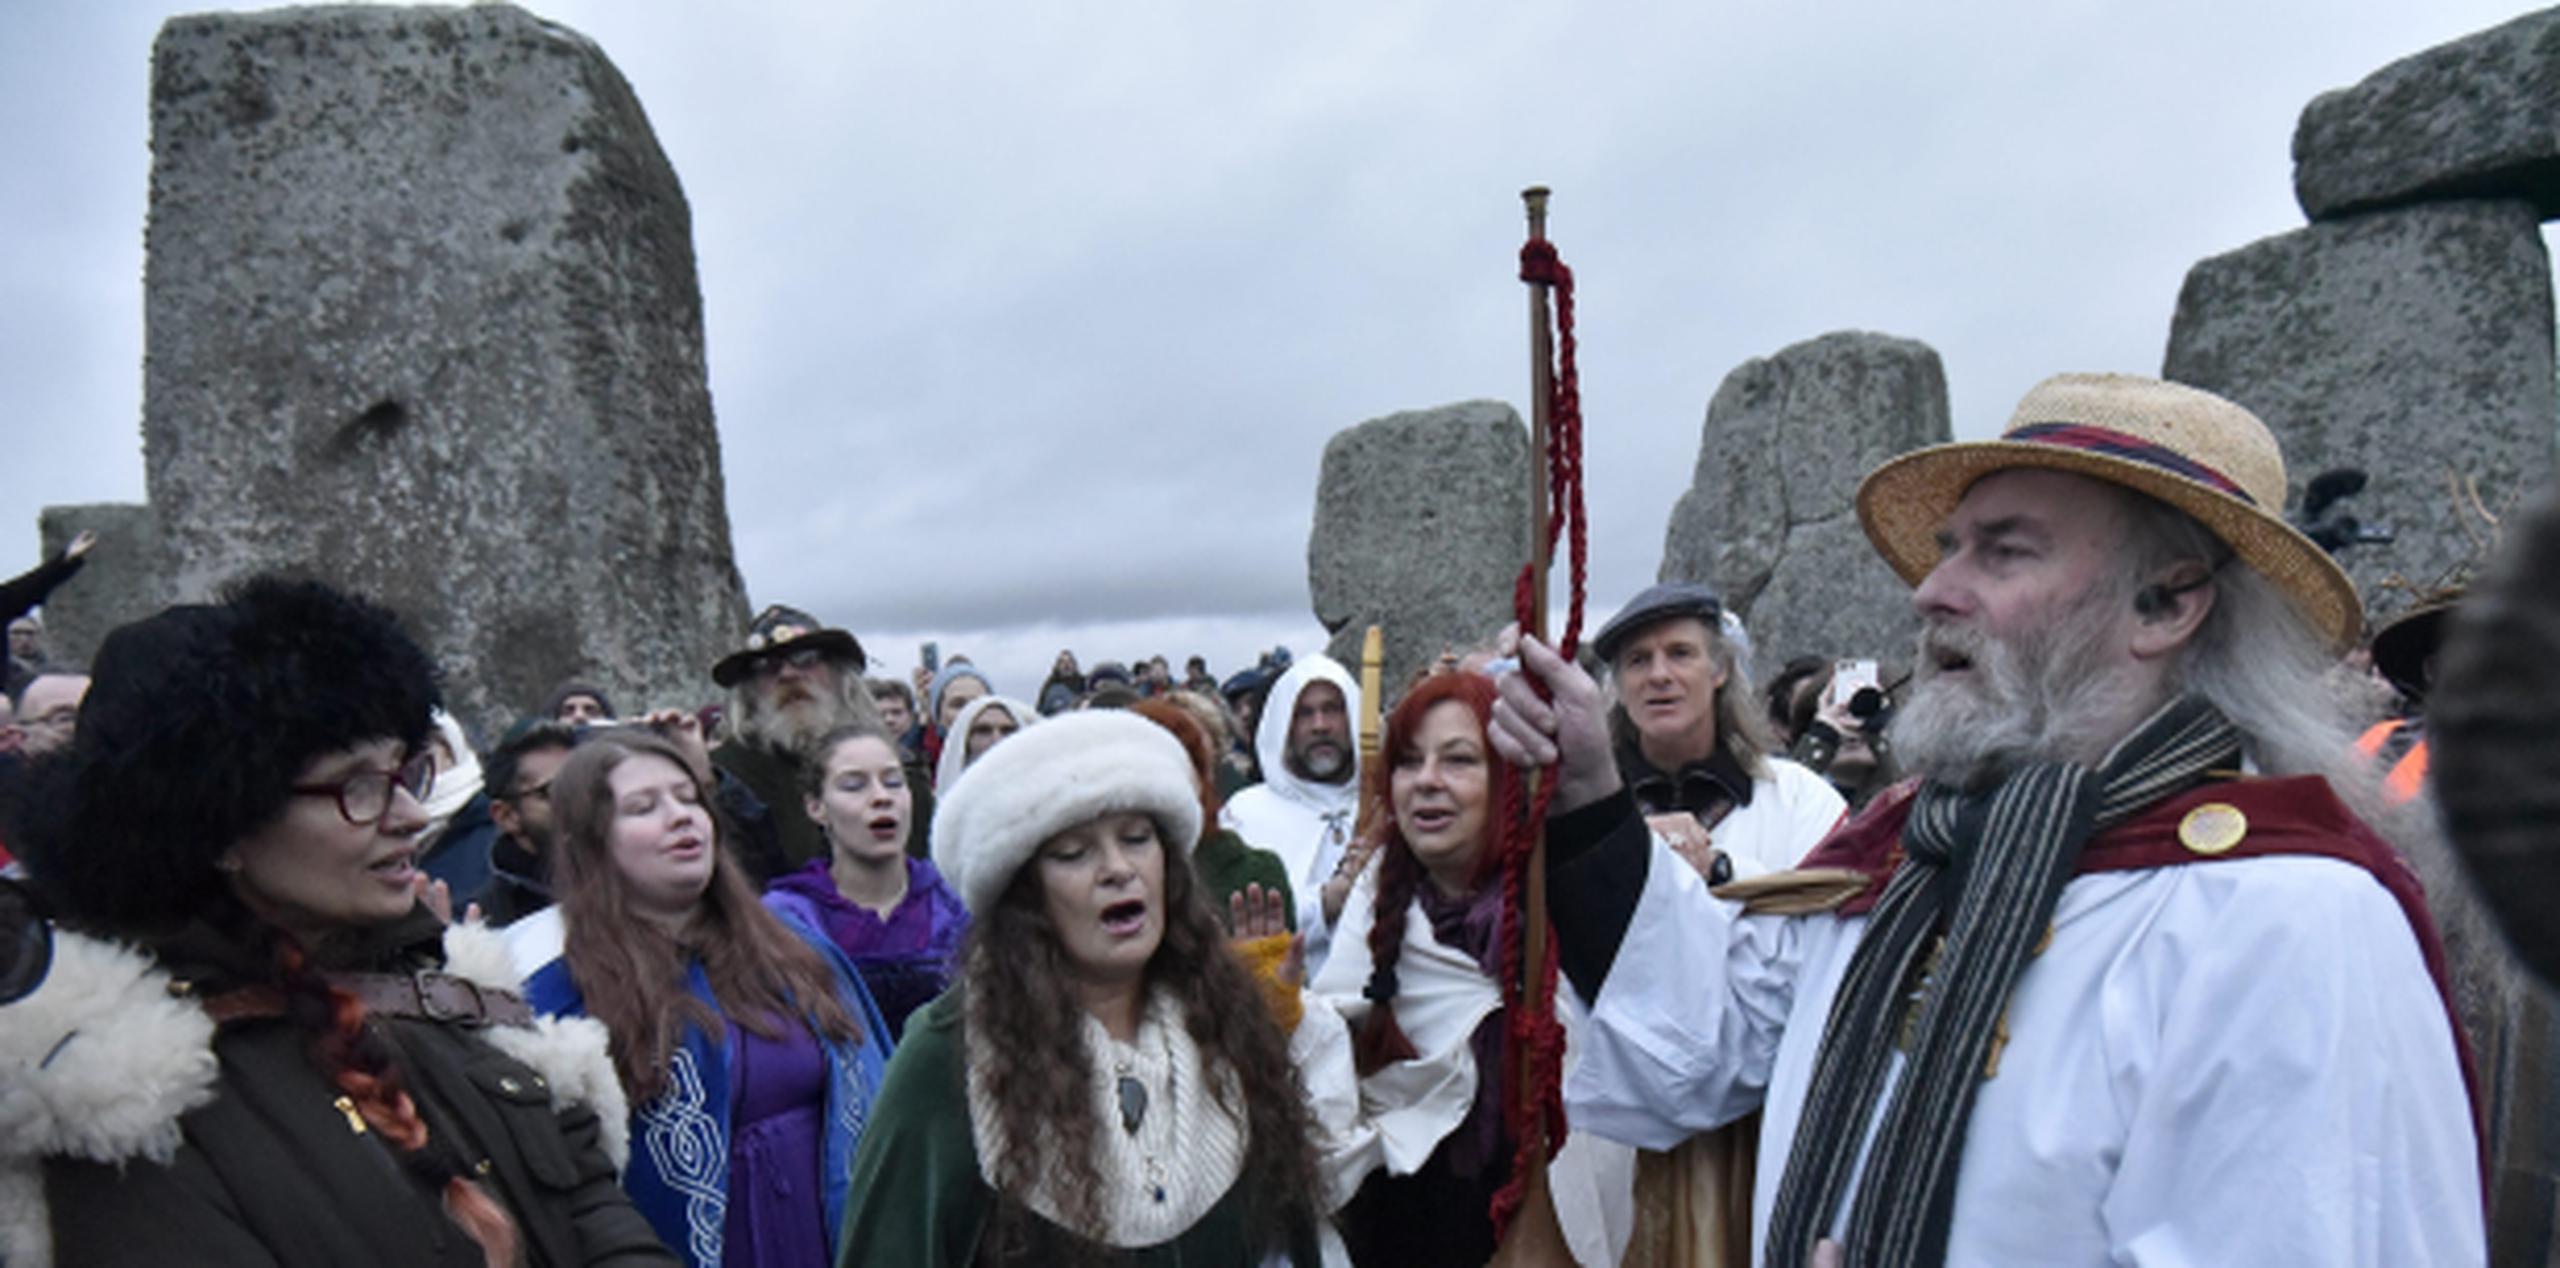 Personas disfrazadas de druidas acudieron hoy al monumento de Stonehenge para el solsticio. (Archivo)